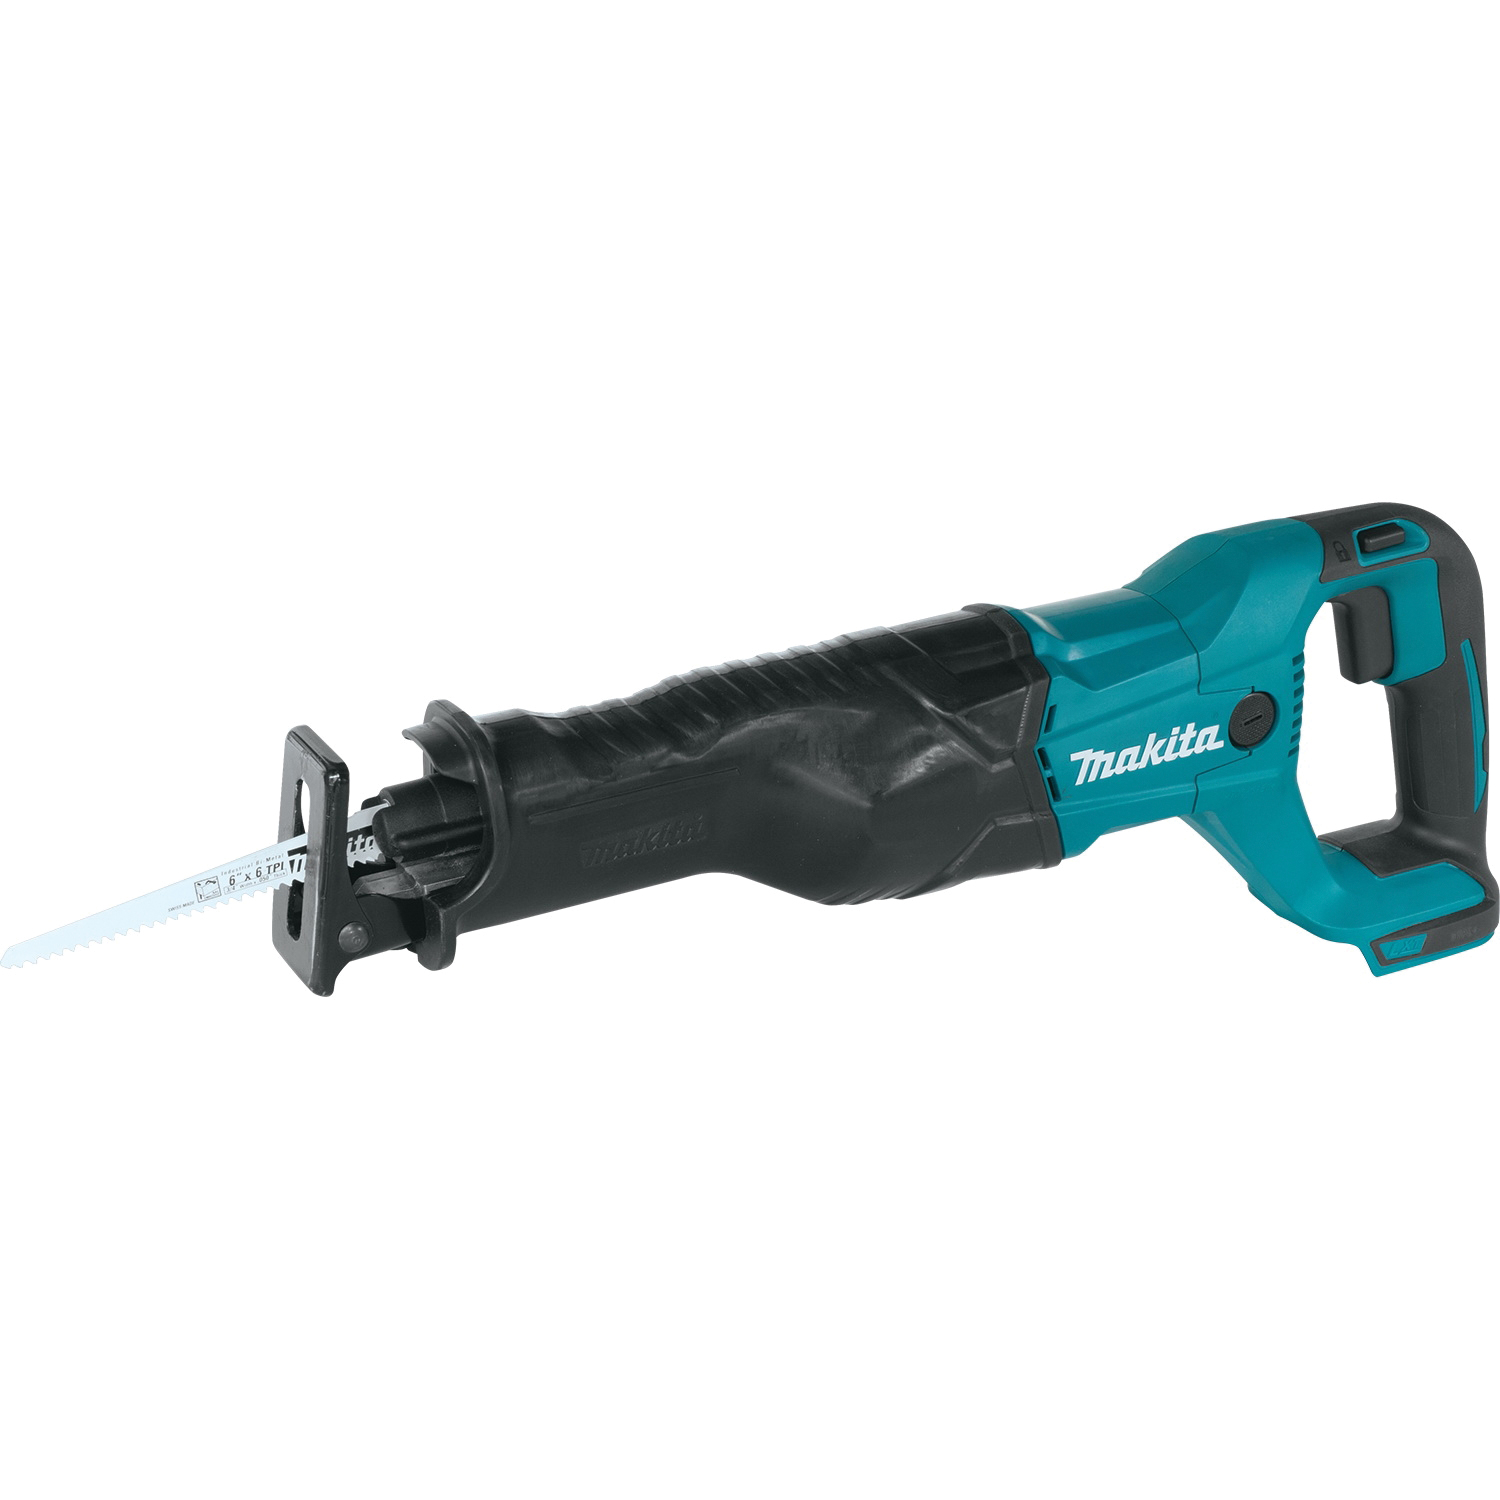 Makita XRJ04Z Reciprocating Saw, Tool Only, 18 V, 10 in Cutting Capacity, 1-1/4 in L Stroke, 0 to 2800 spm - 6